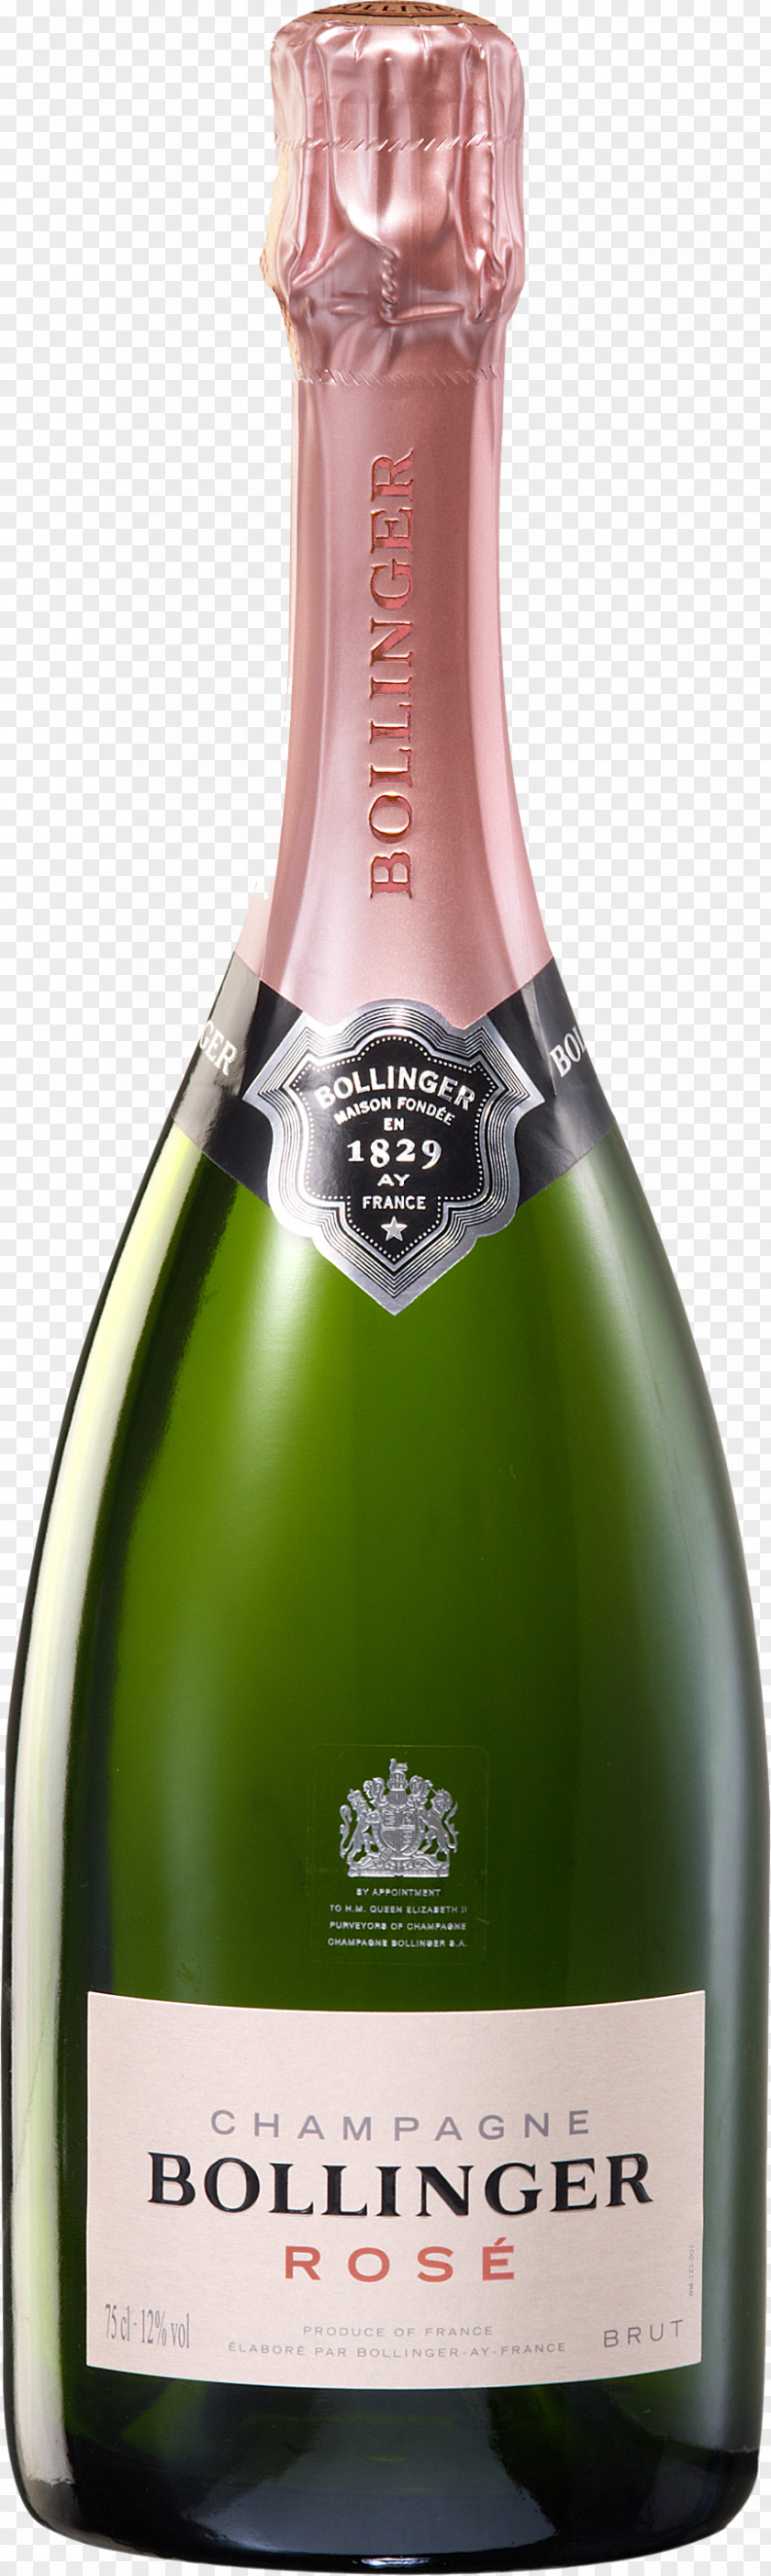 Champagne Bollinger Rosé Sparkling Wine PNG